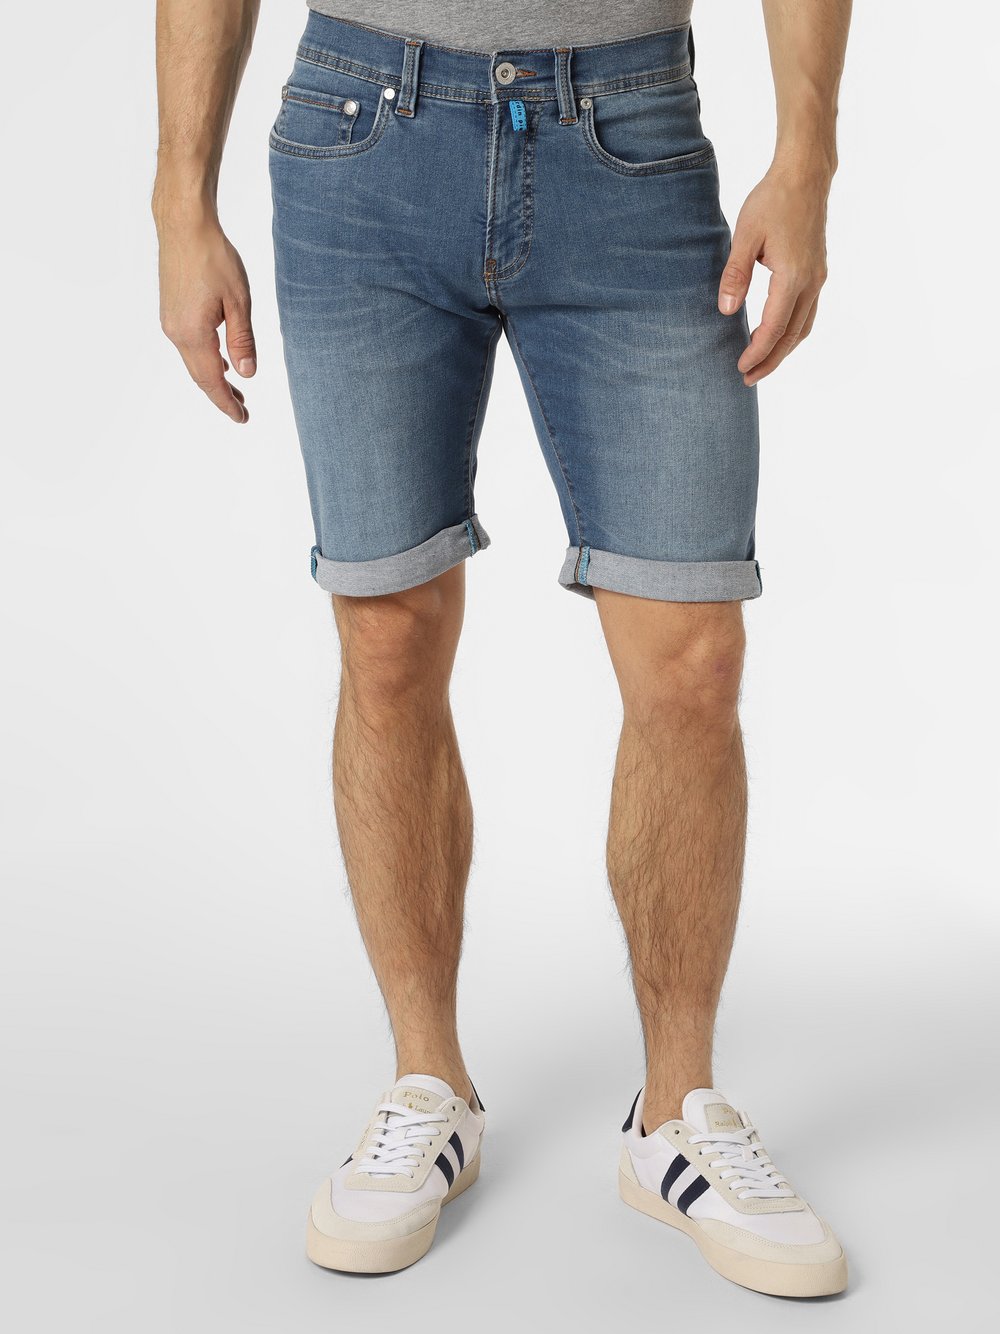 Pierre Cardin - Męskie spodenki jeansowe – Lyon Bermuda, niebieski